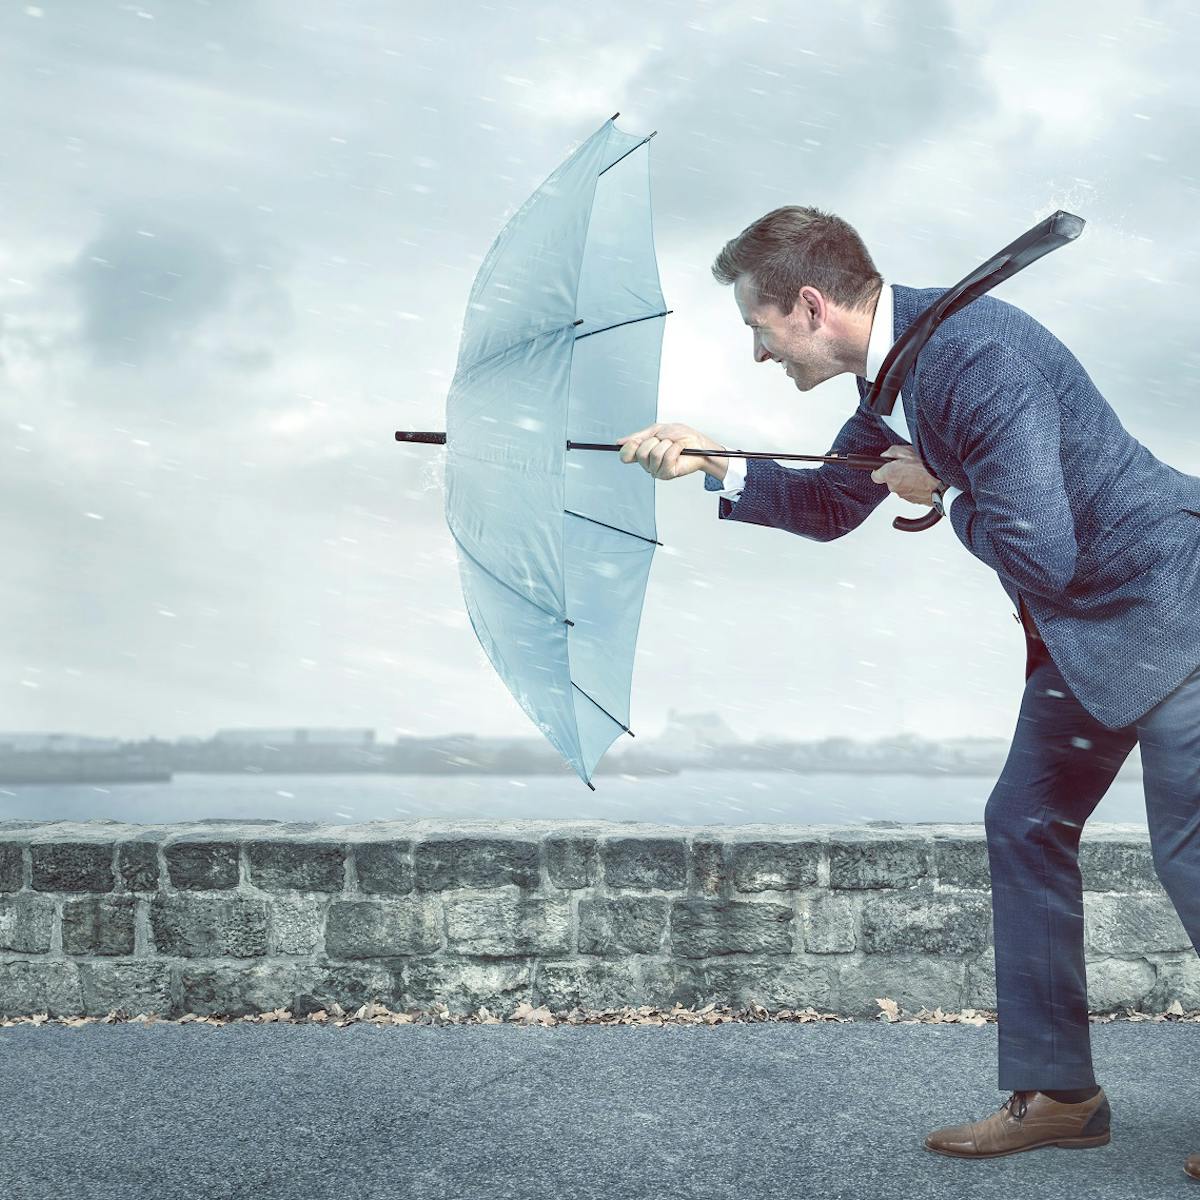 Mann stemmt sich mit Regenschirm gegen Regen